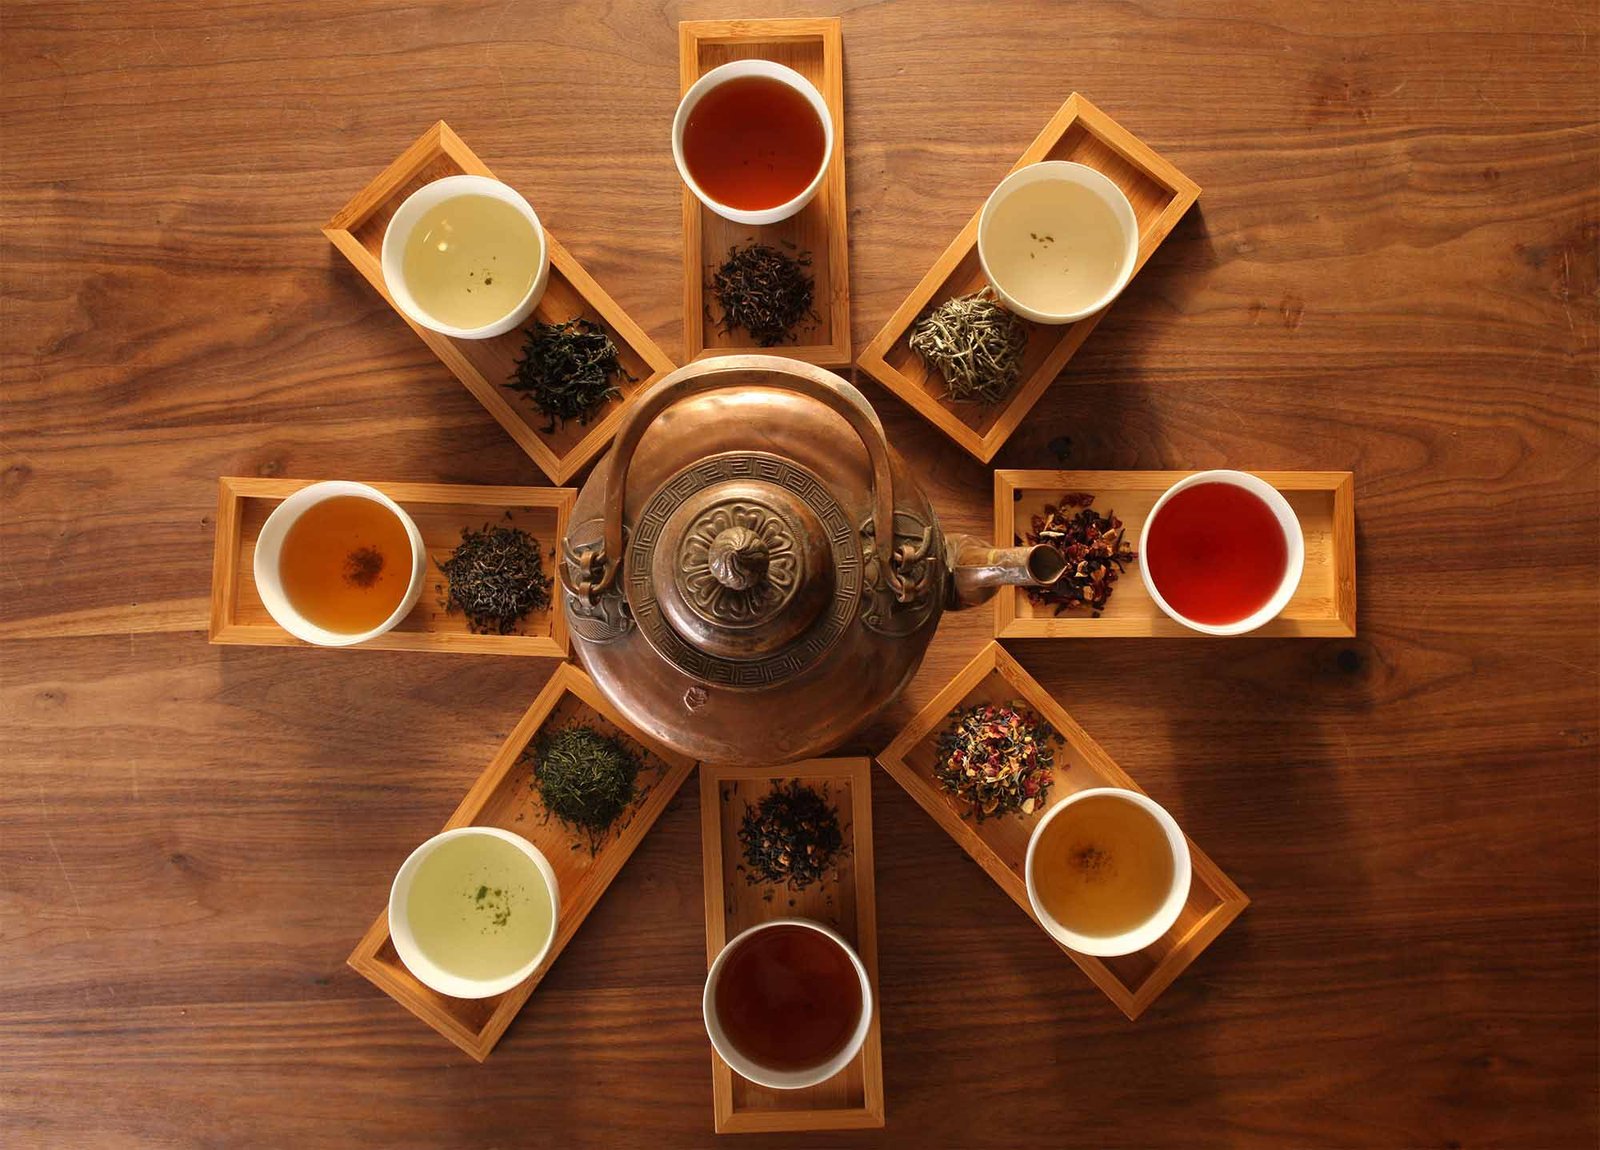 The healing properties of tea